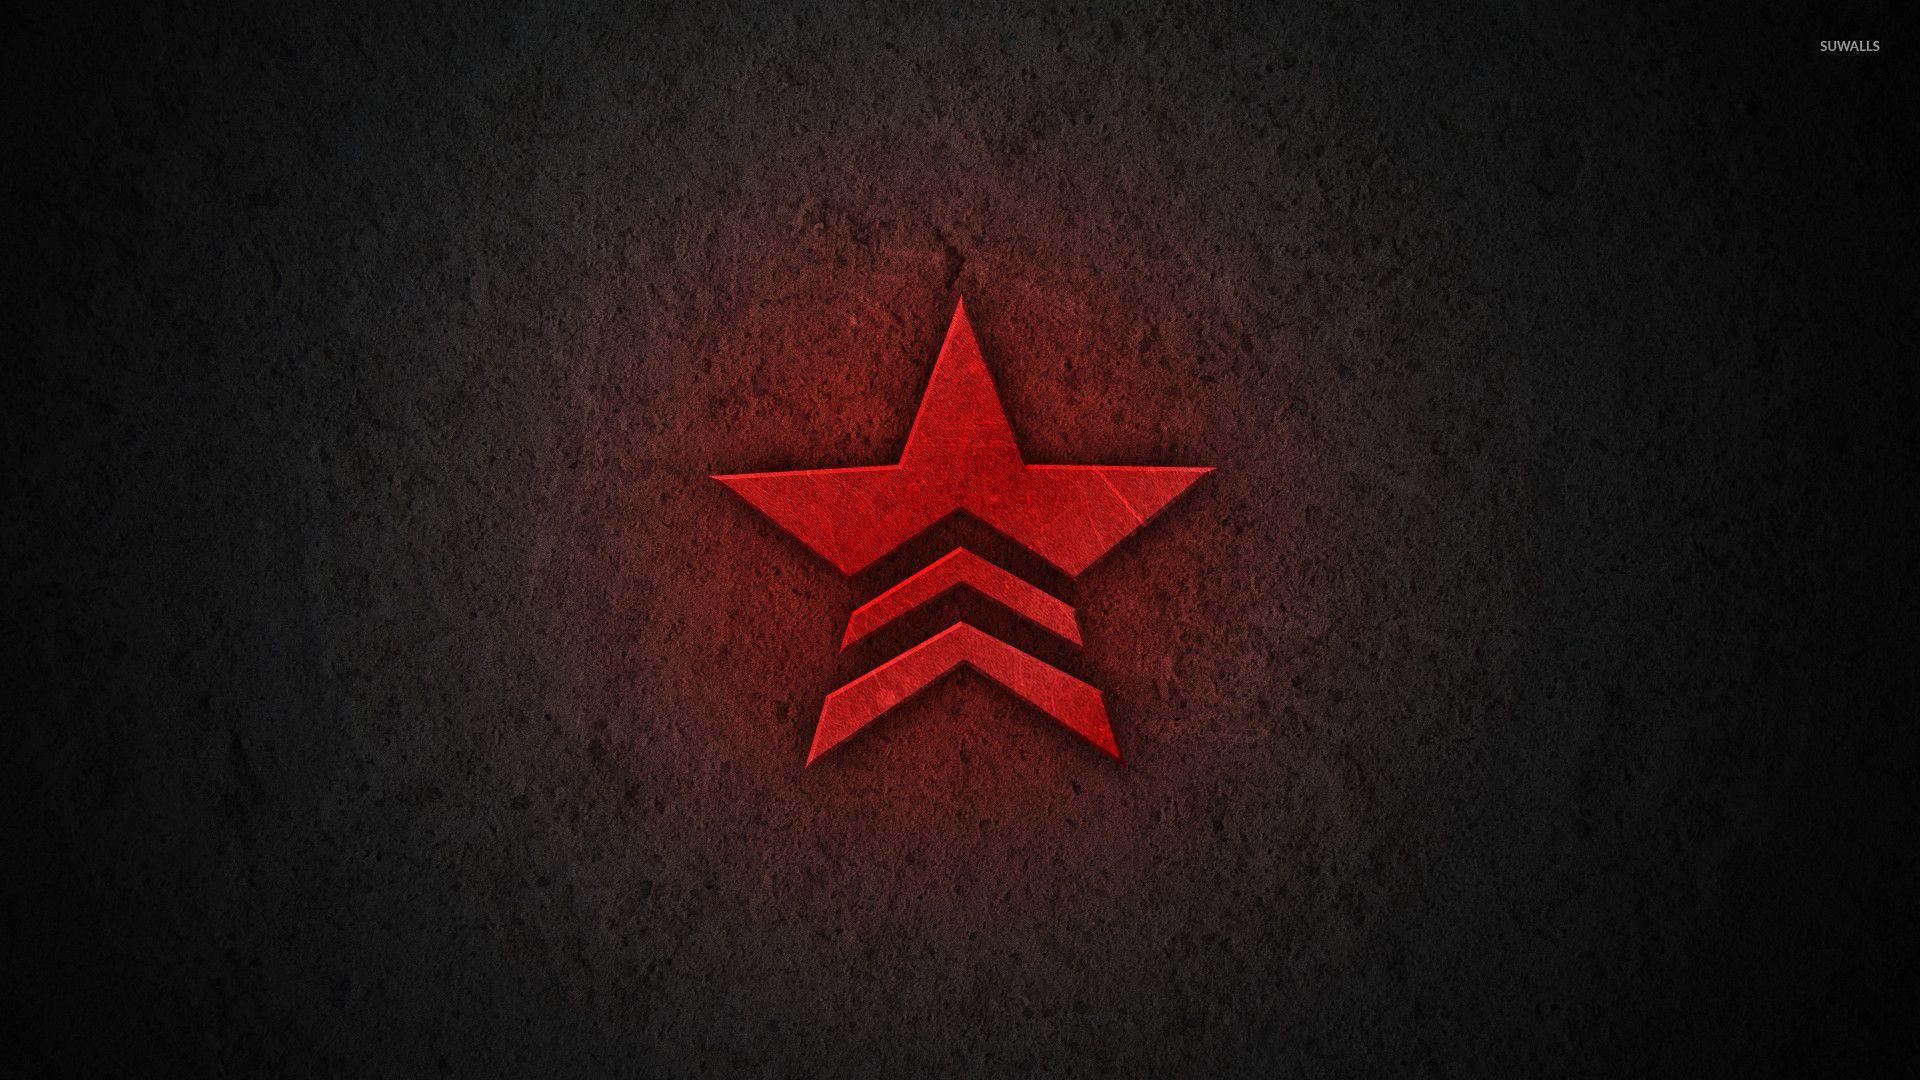 Red Mass Effect star logo wallpaper wallpaper